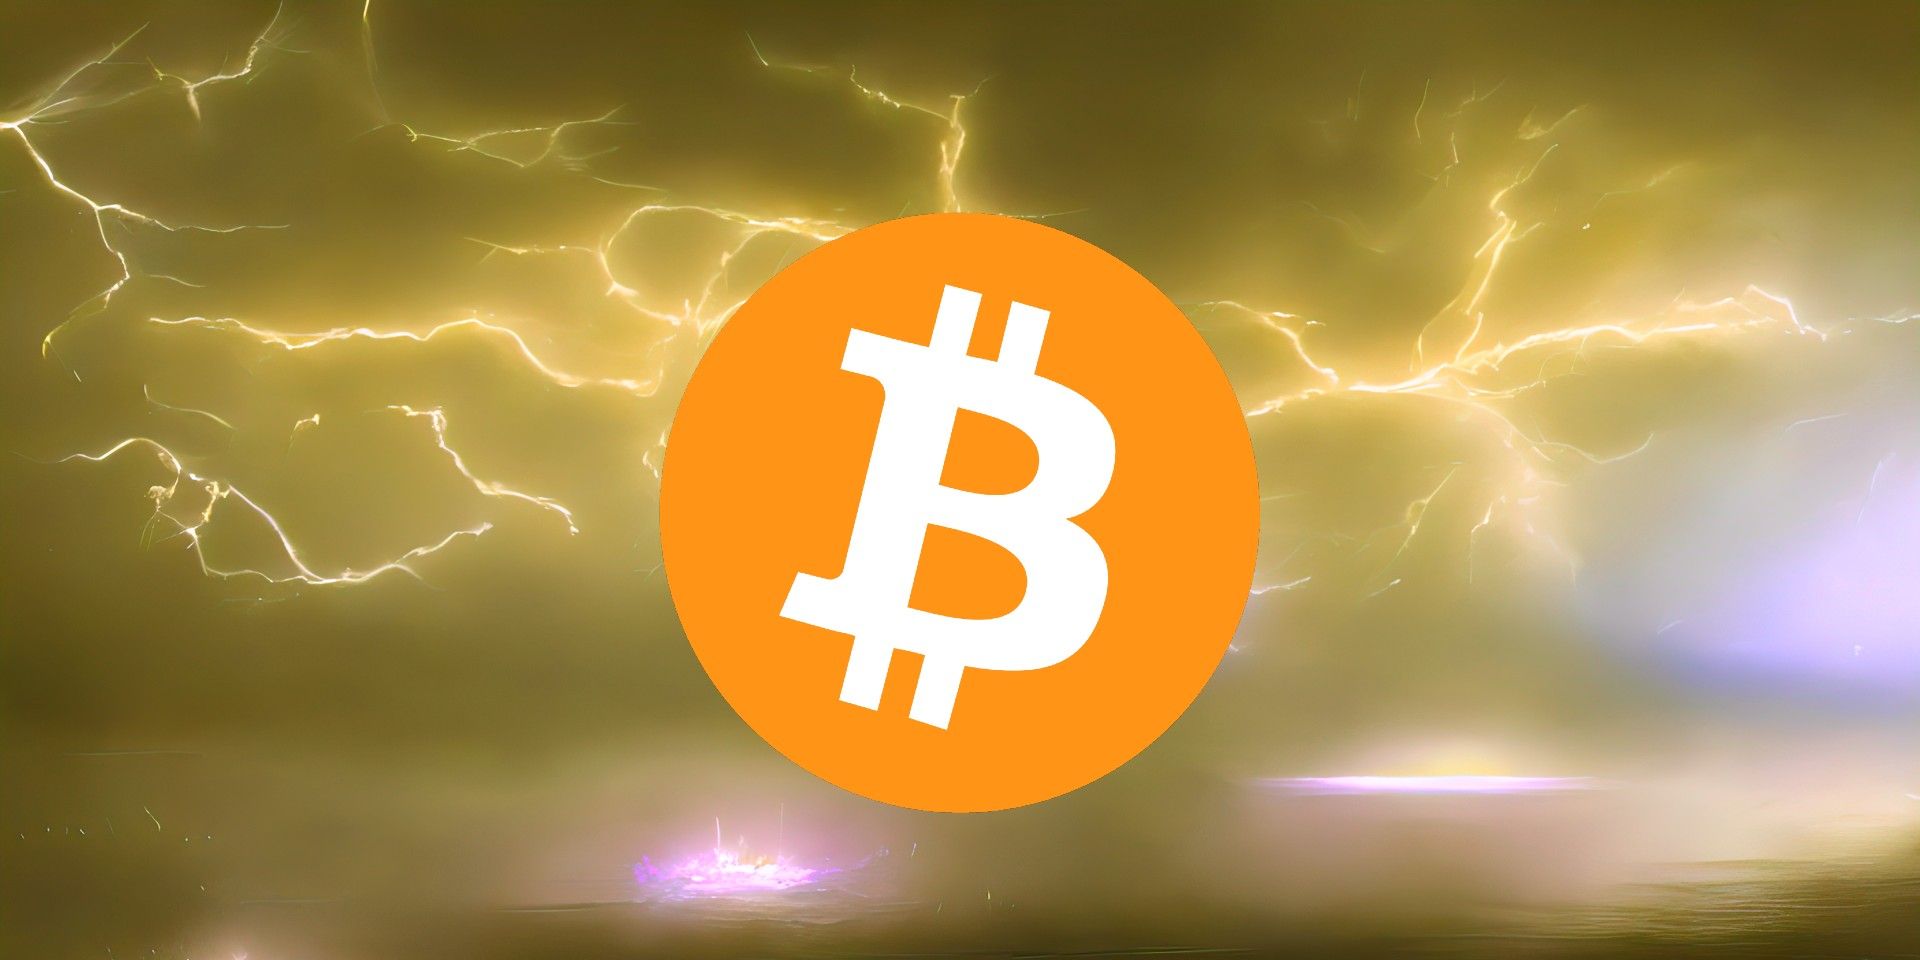 Bitcoin logo over a golden lightning storm